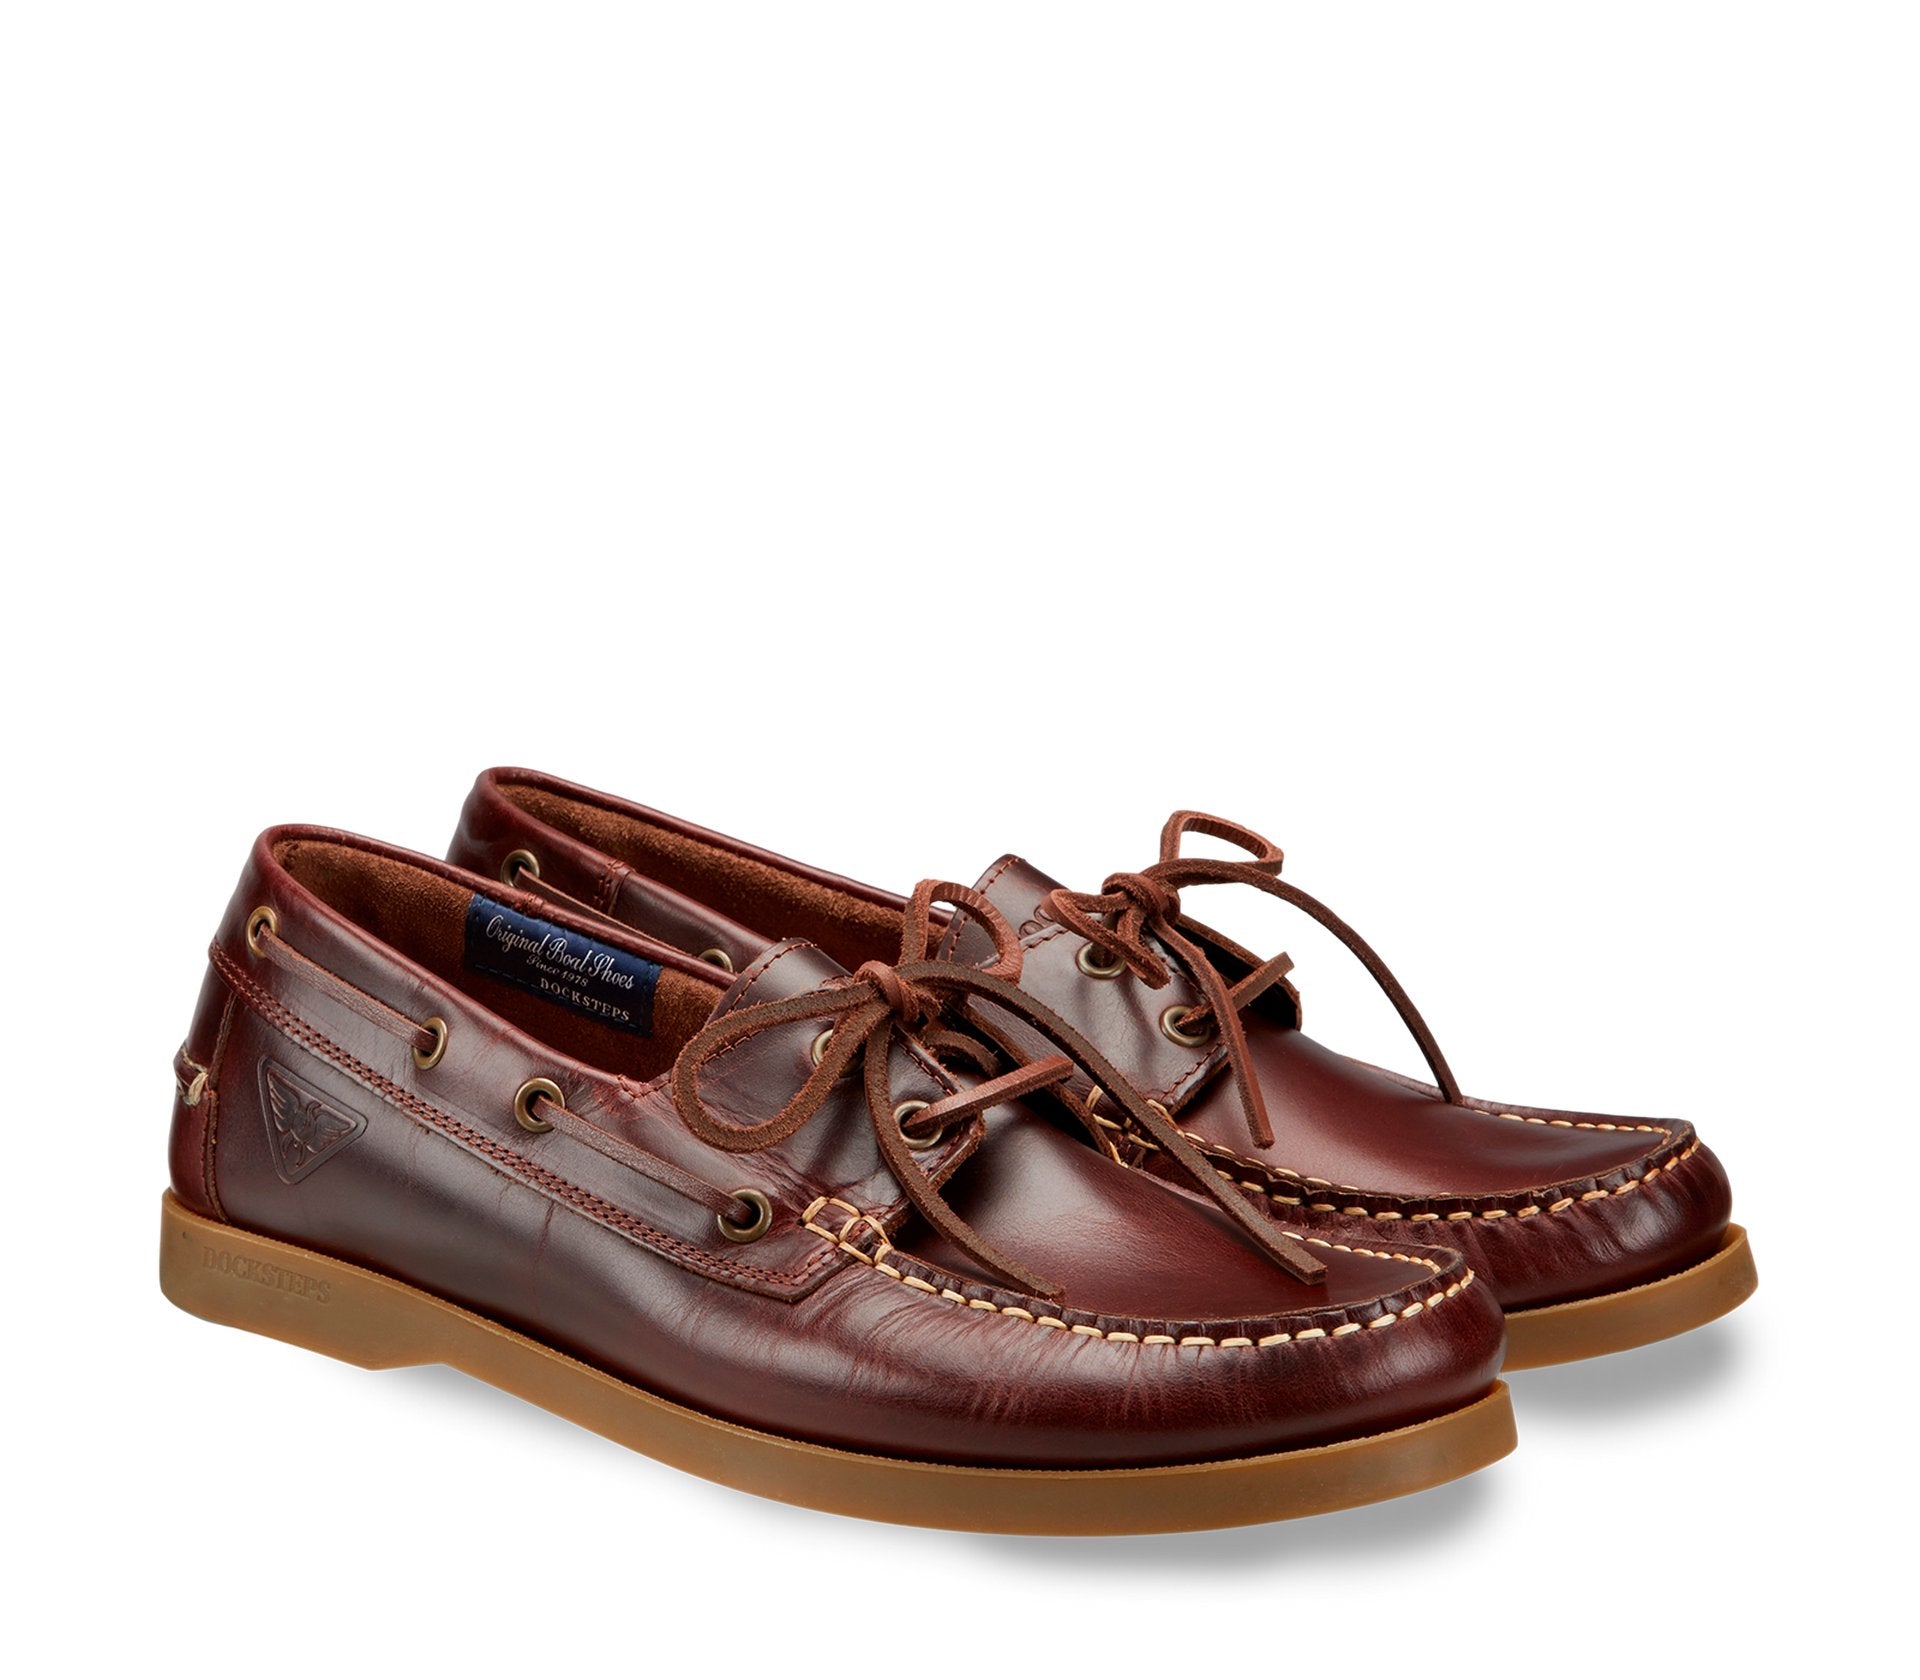 Elegant Leather Men's Boat Shoes